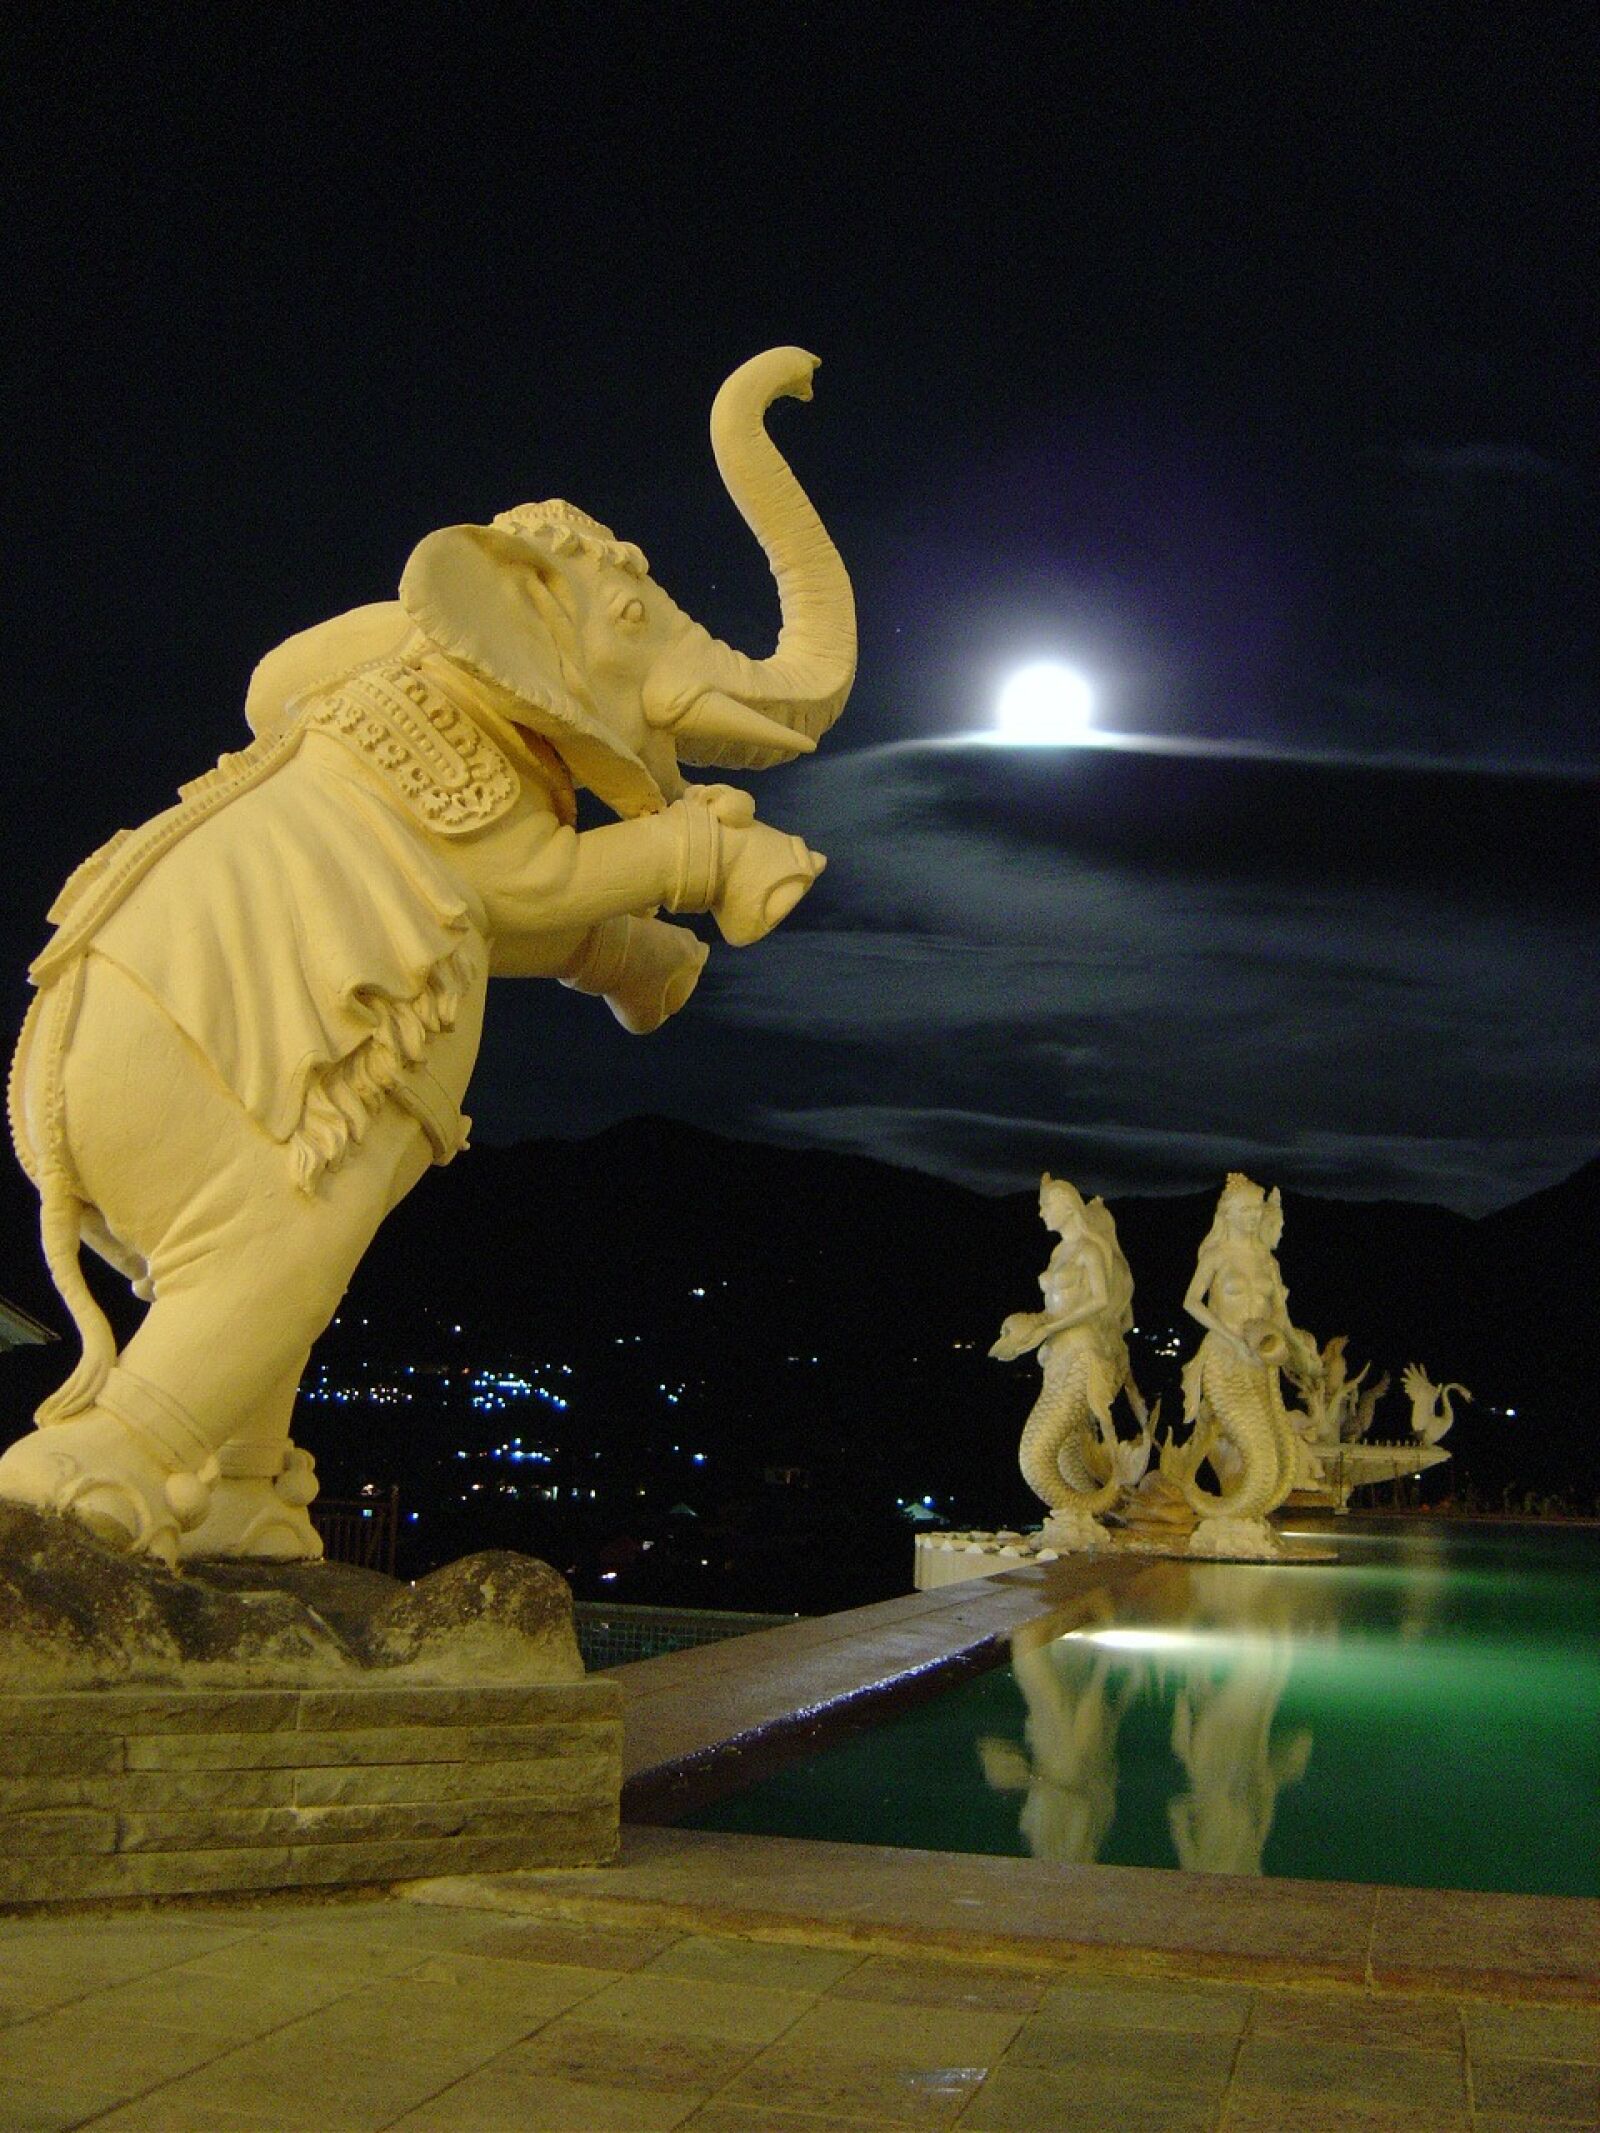 Sony DSC-P10 sample photo. Night, moon, elephant photography